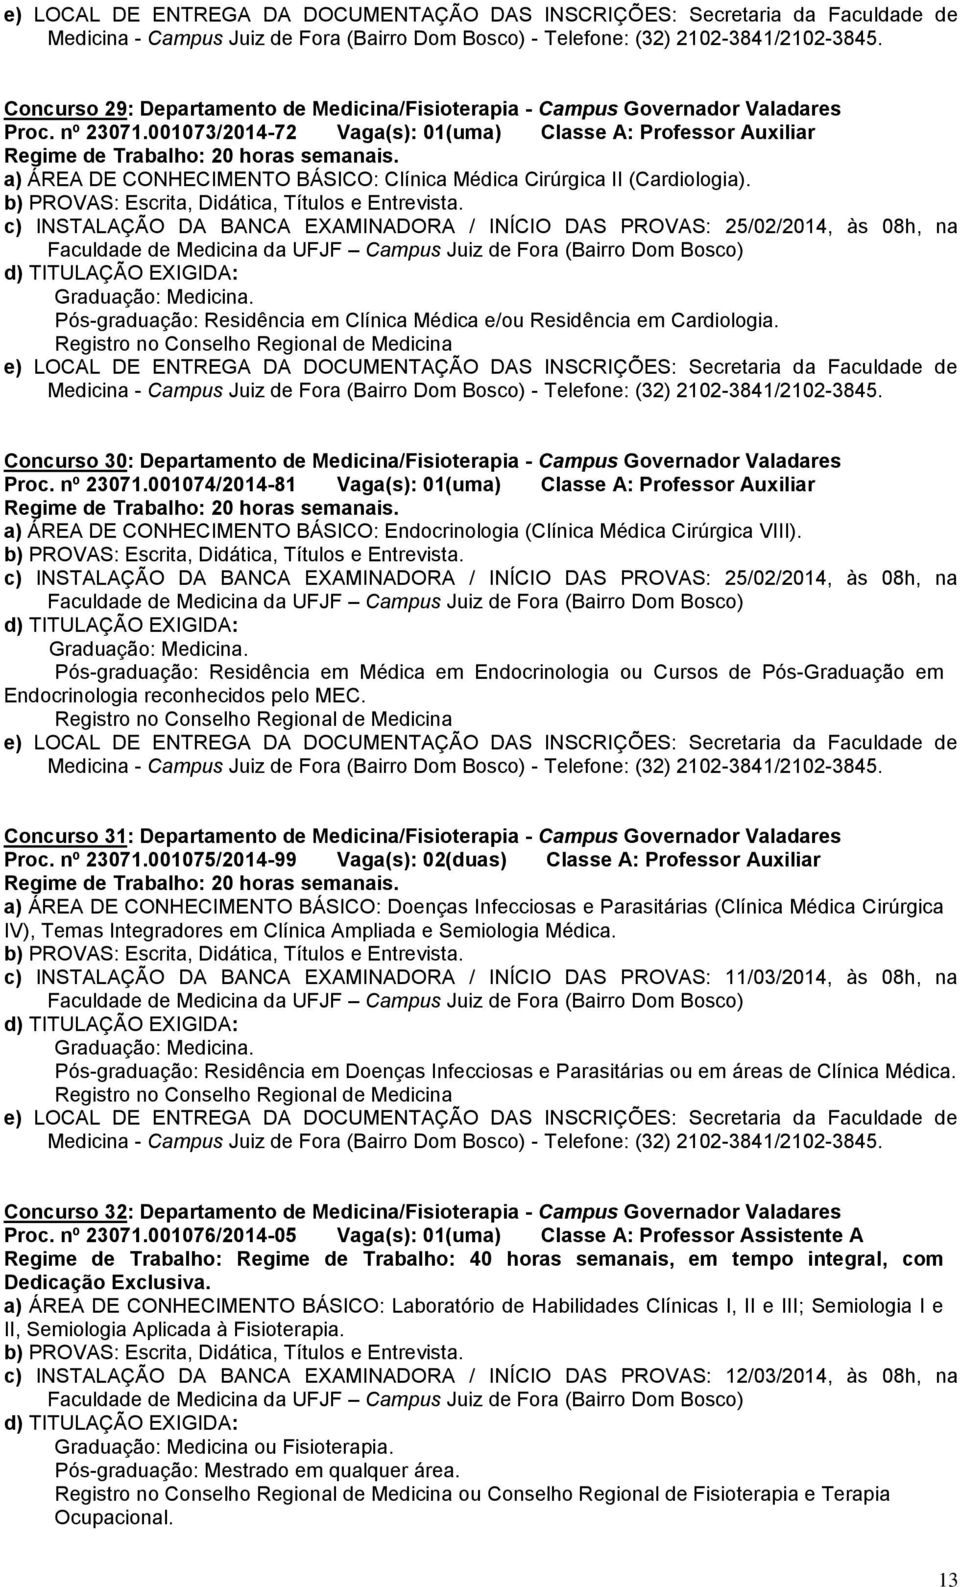 c) INSTALAÇÃO DA BANCA EXAMINADORA / INÍCIO DAS PROVAS: 25/02/2014, às 08h, na Pós-graduação: Residência em Clínica Médica e/ou Residência em Cardiologia.